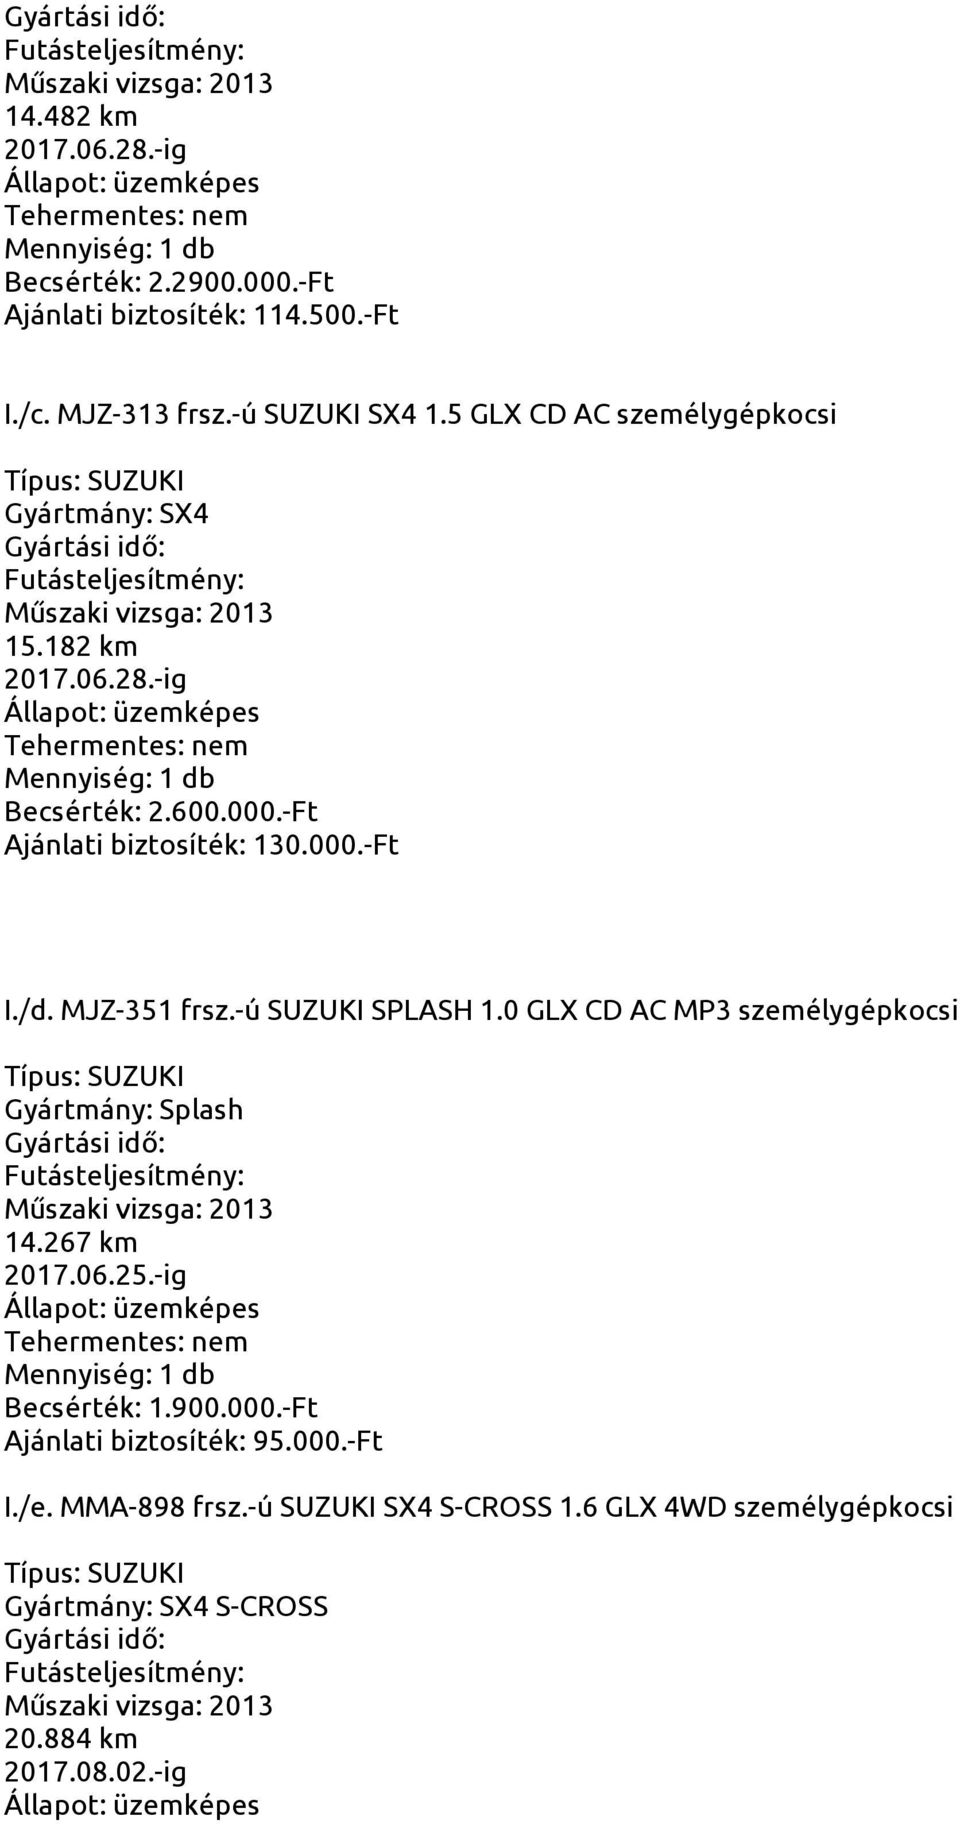 MJZ-351 frsz.-ú SUZUKI SPLASH 1.0 GLX CD AC MP3 személygépkocsi Gyártmány: Splash 14.267 km 2017.06.25.-ig Becsérték: 1.900.000.